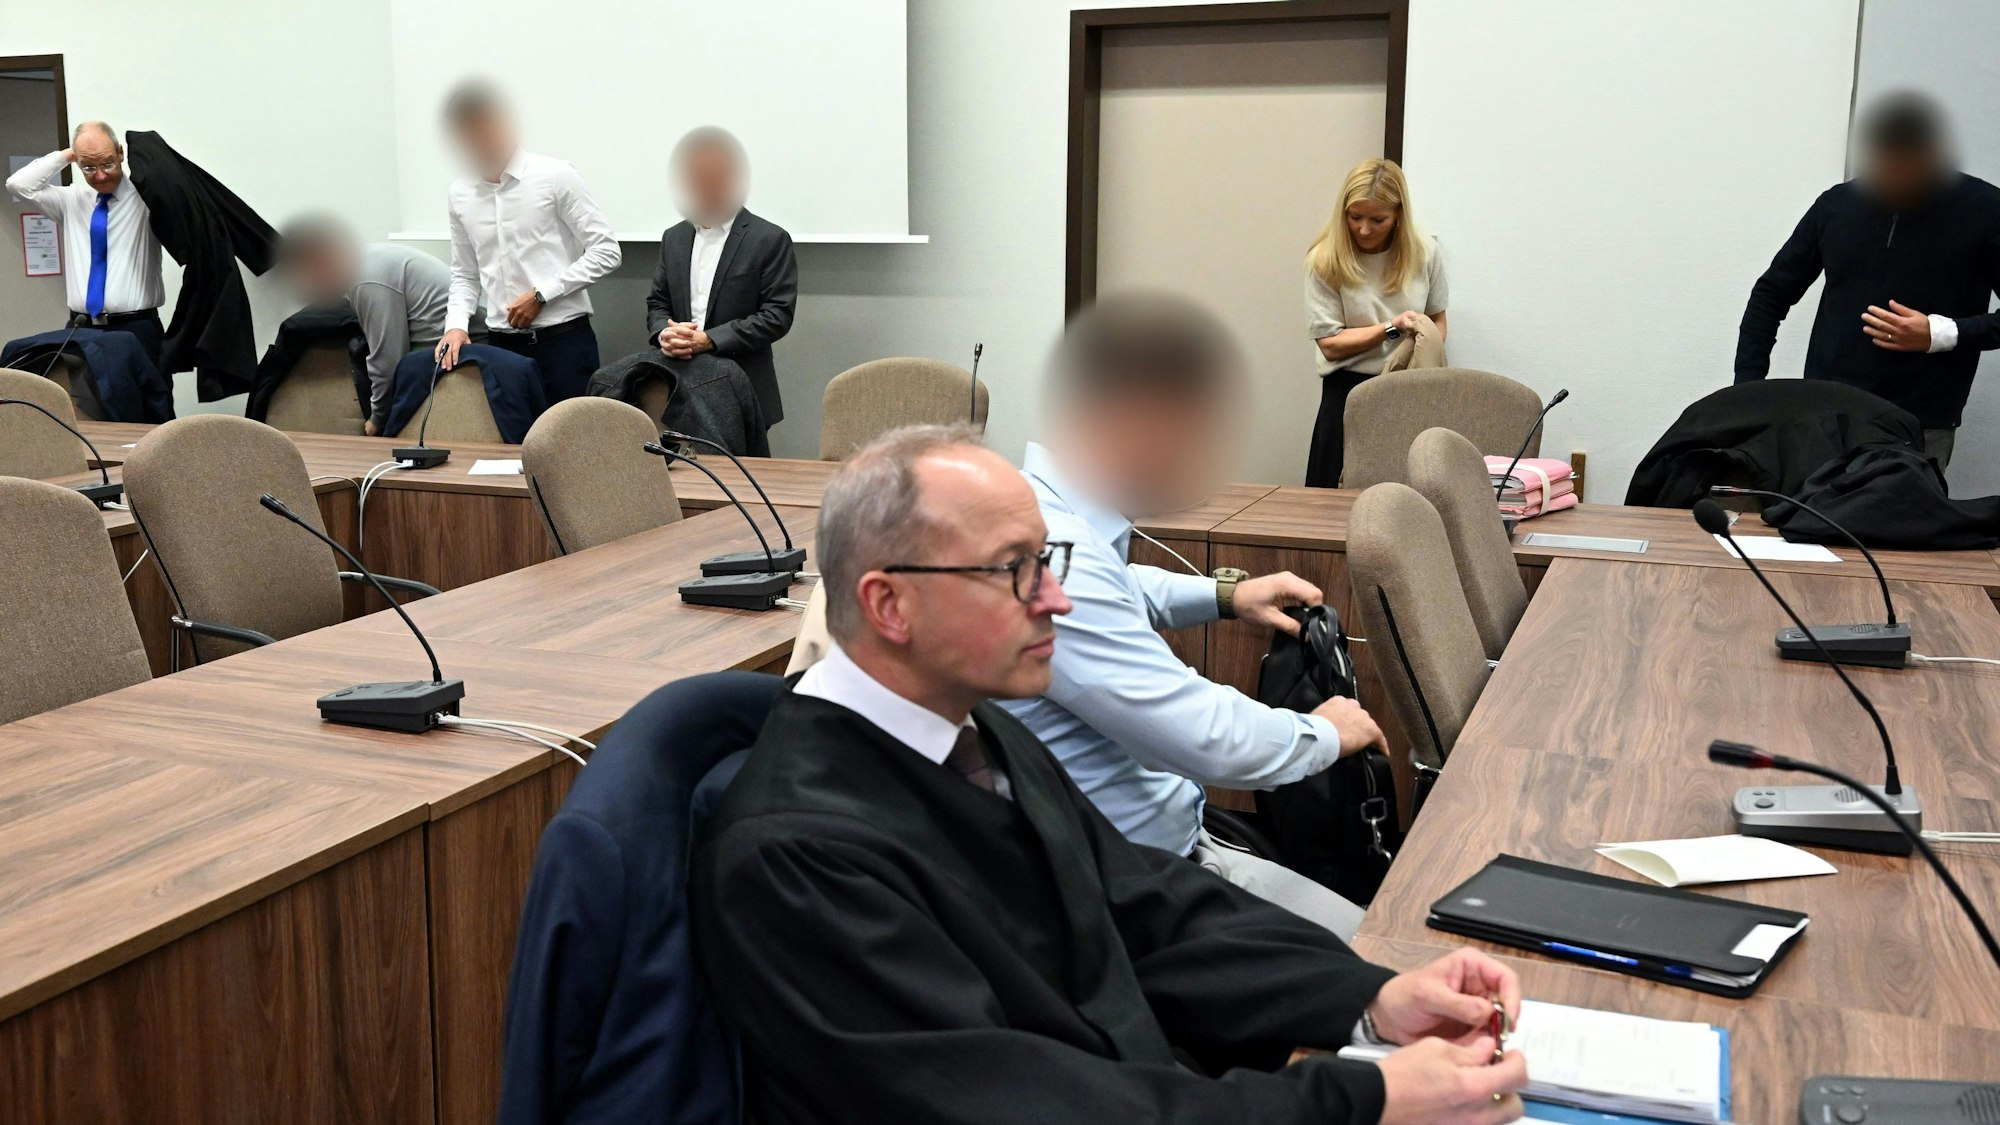 Zu sehen ist das Innere eines Gerichtsgebäudes in Köln. Die Angeklagten warten mit ihren Rechtsanwälten auf den Beginn des Prozesses.